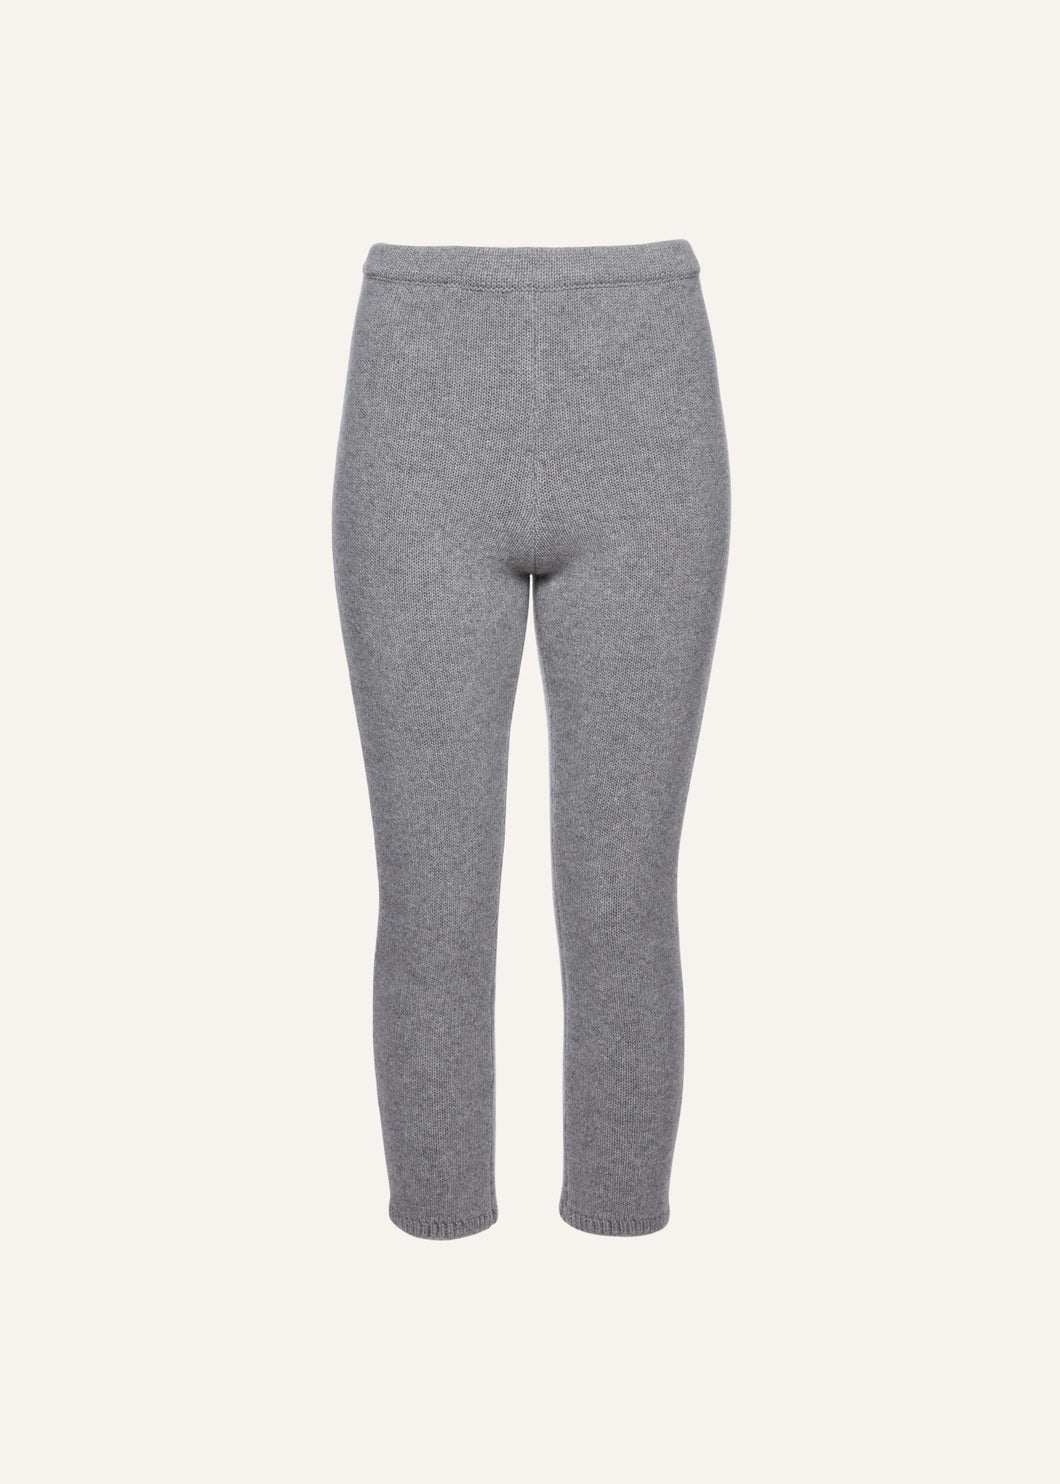 Cropped knitwear leggings in light grey